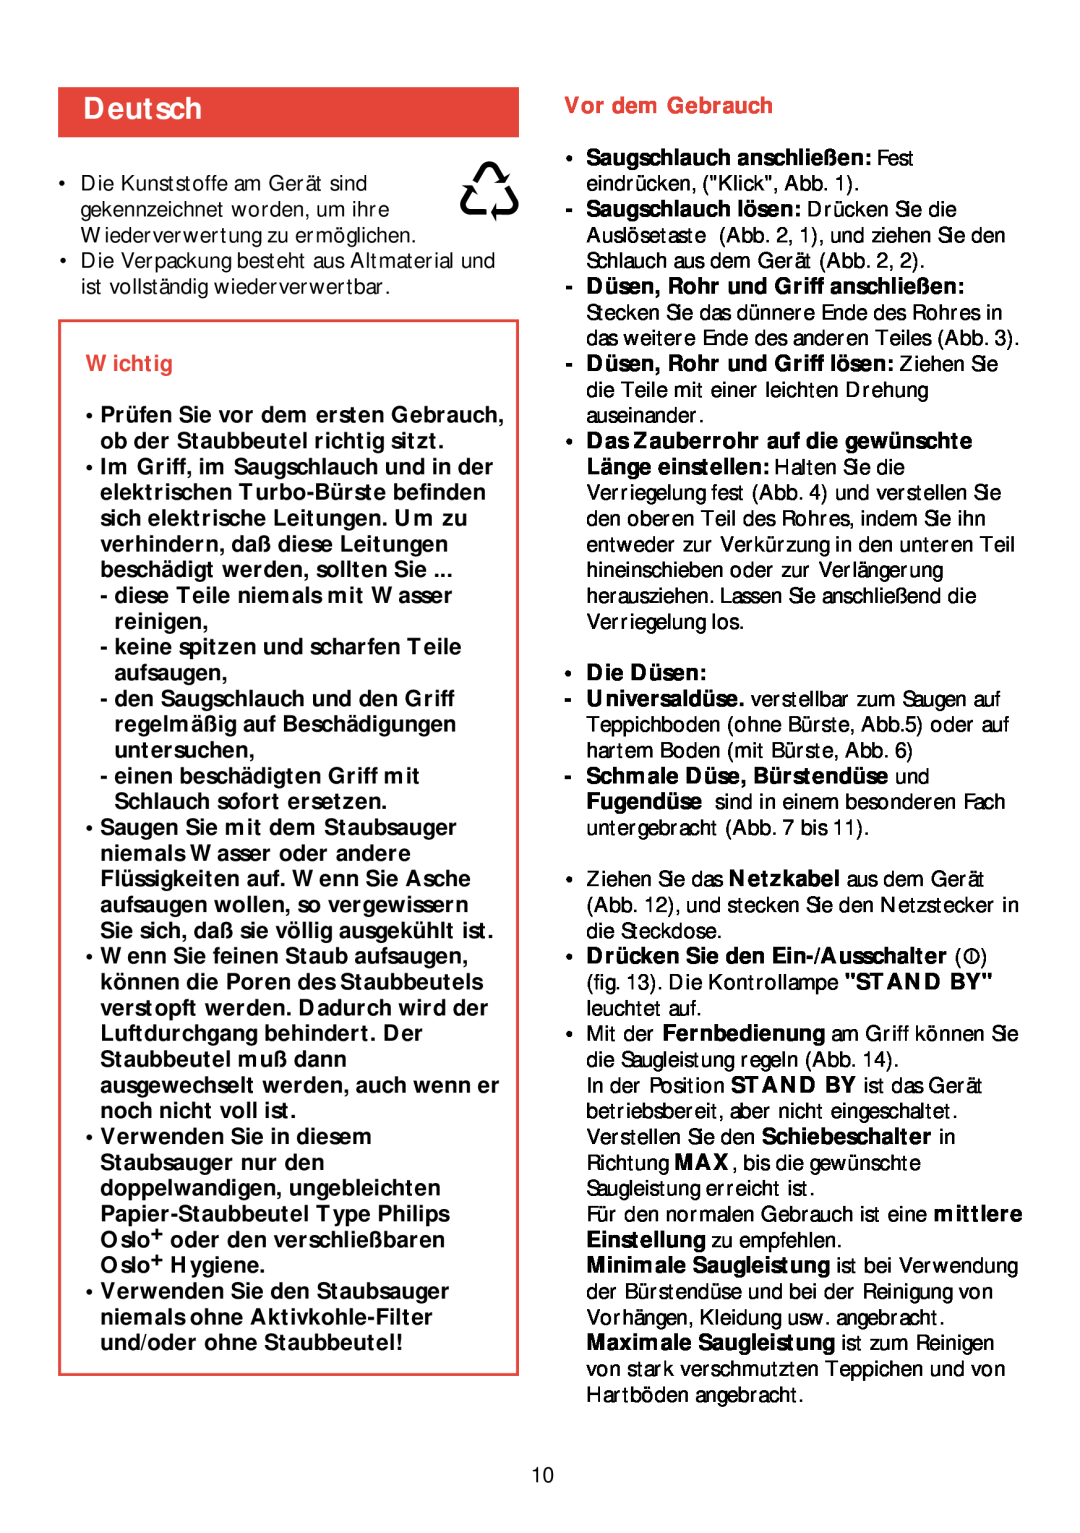 Philips HR 6988 manual Deutsch, Wichtig, Vor dem Gebrauch 